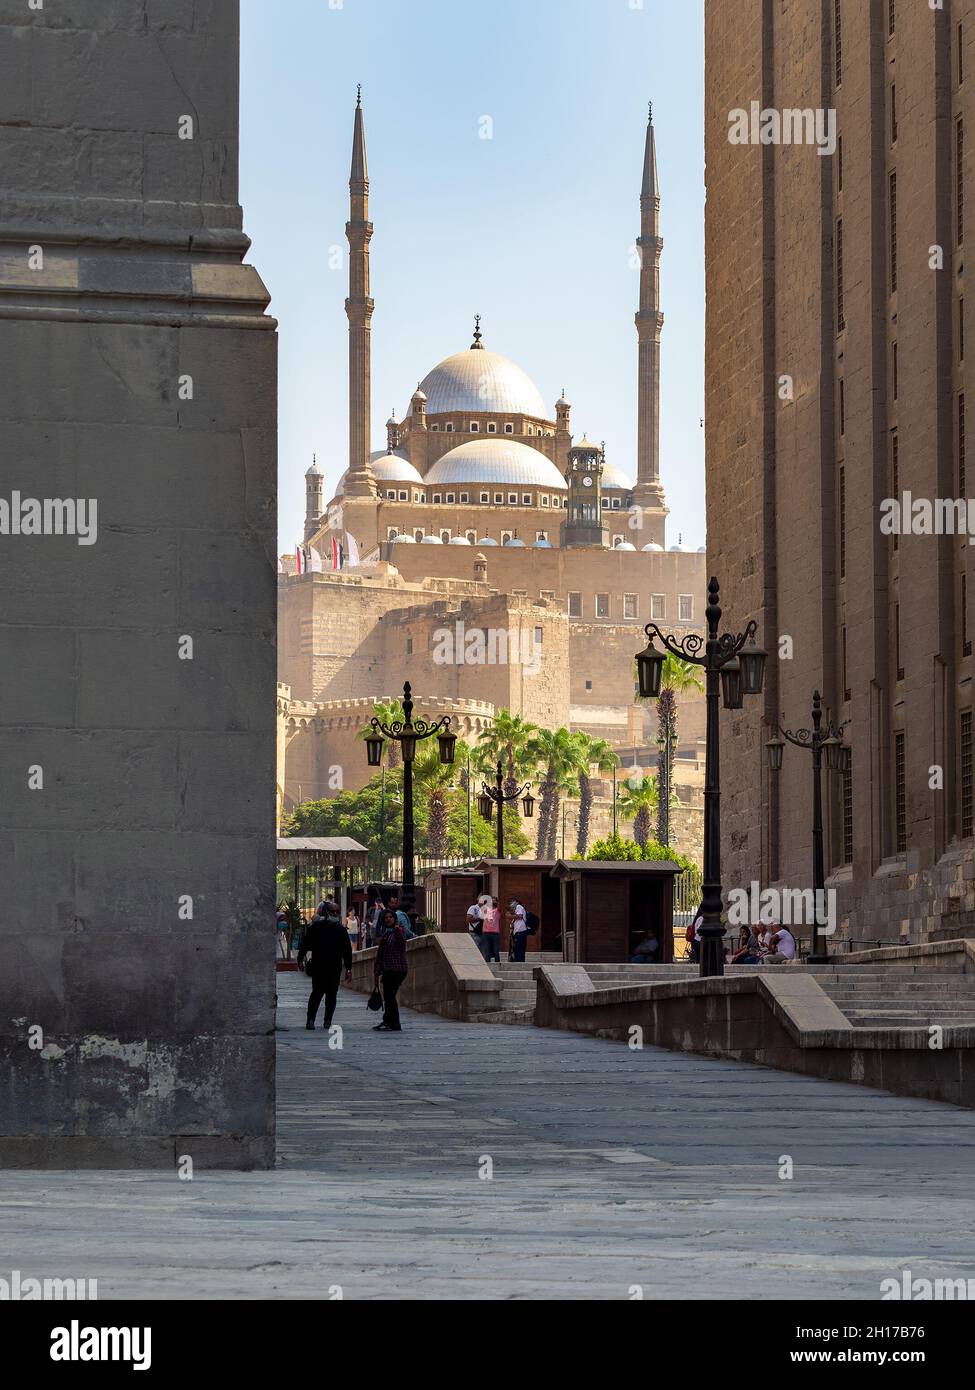 El Cairo, Egipto - 25 2021 de septiembre: Foto de un día de la Gran Mezquita de Muhammad Ali Pasha, enmarcada por la Mezquita Al Rifai y la Mezquita Sultán Hassan, ubicada en la Ciudadela de El Cairo Foto de stock